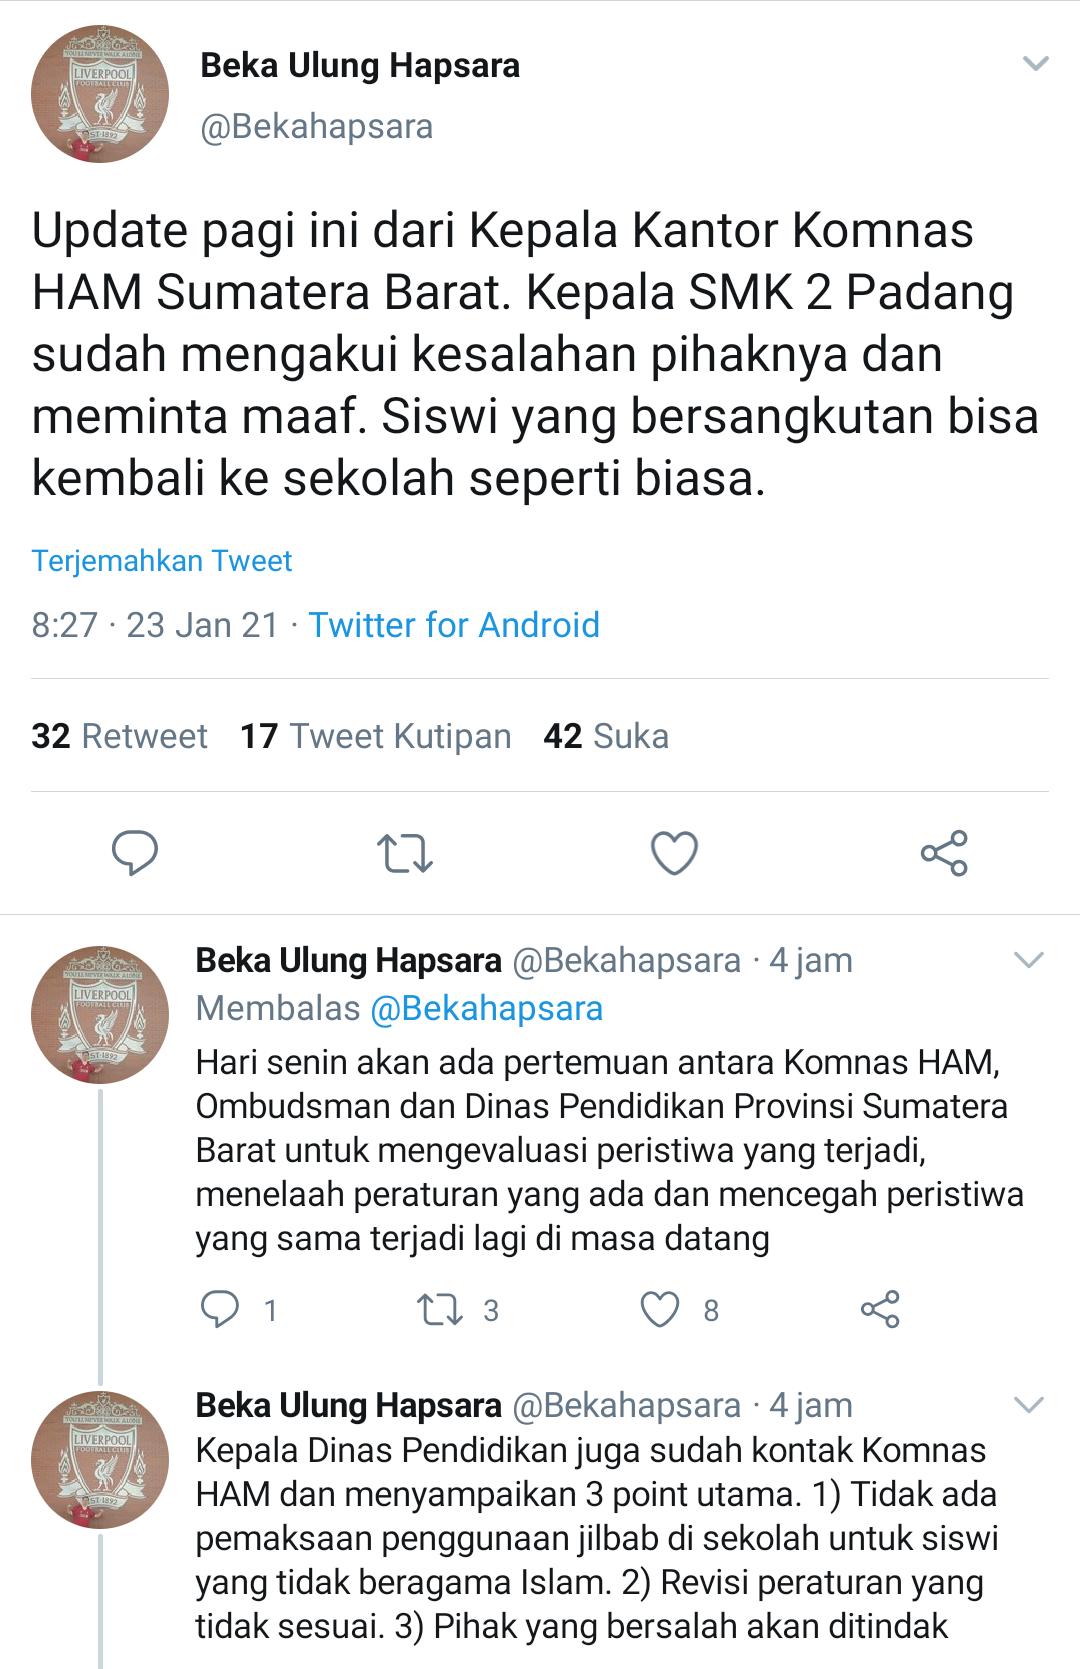 Cuitan Komisioner Komnas HAM, Beka Ulung Hapsara membagikan update terkini mengenai kasus pemaksaan penggunaan jilbab di SMK 2 Padang.*